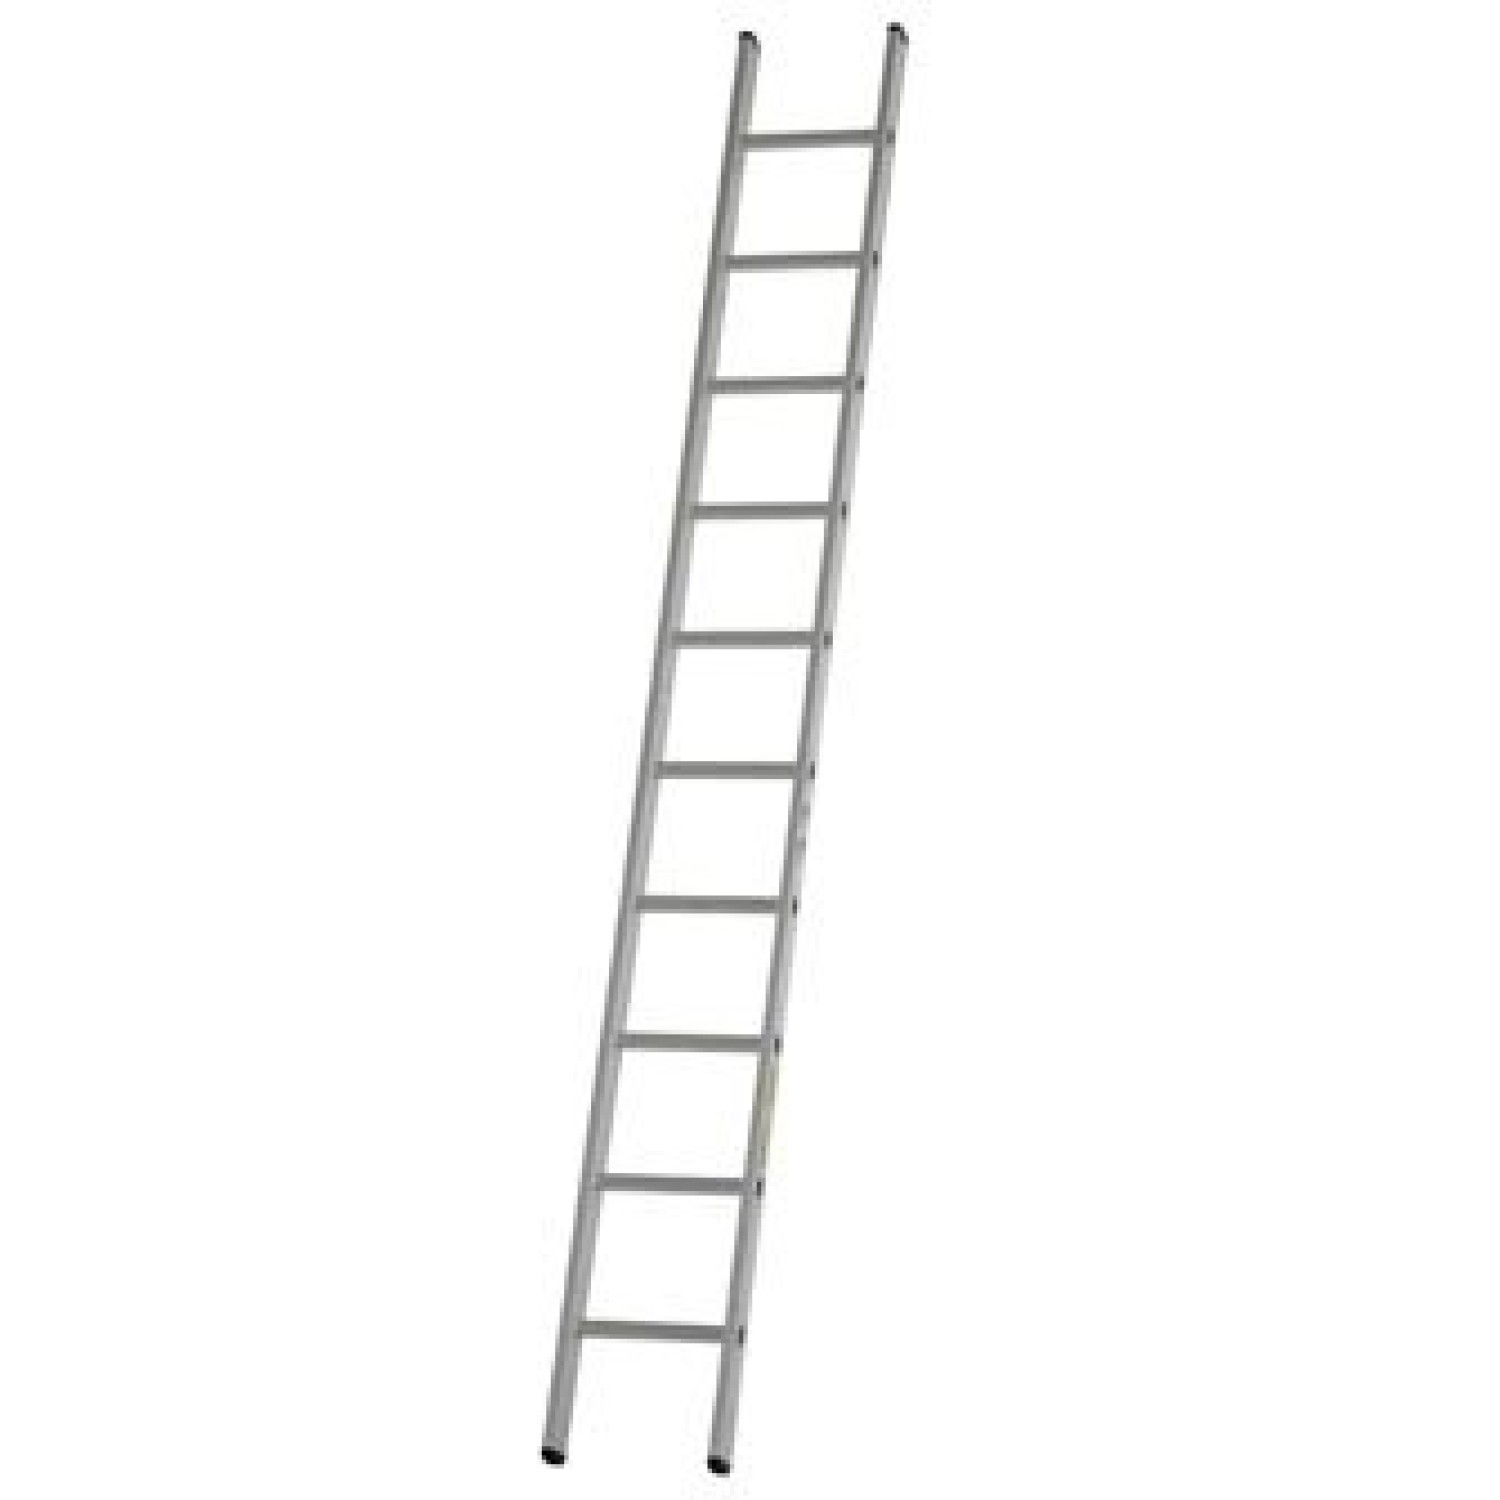 Dirks Enkele rechte ladder 2.45 meter ongecoat